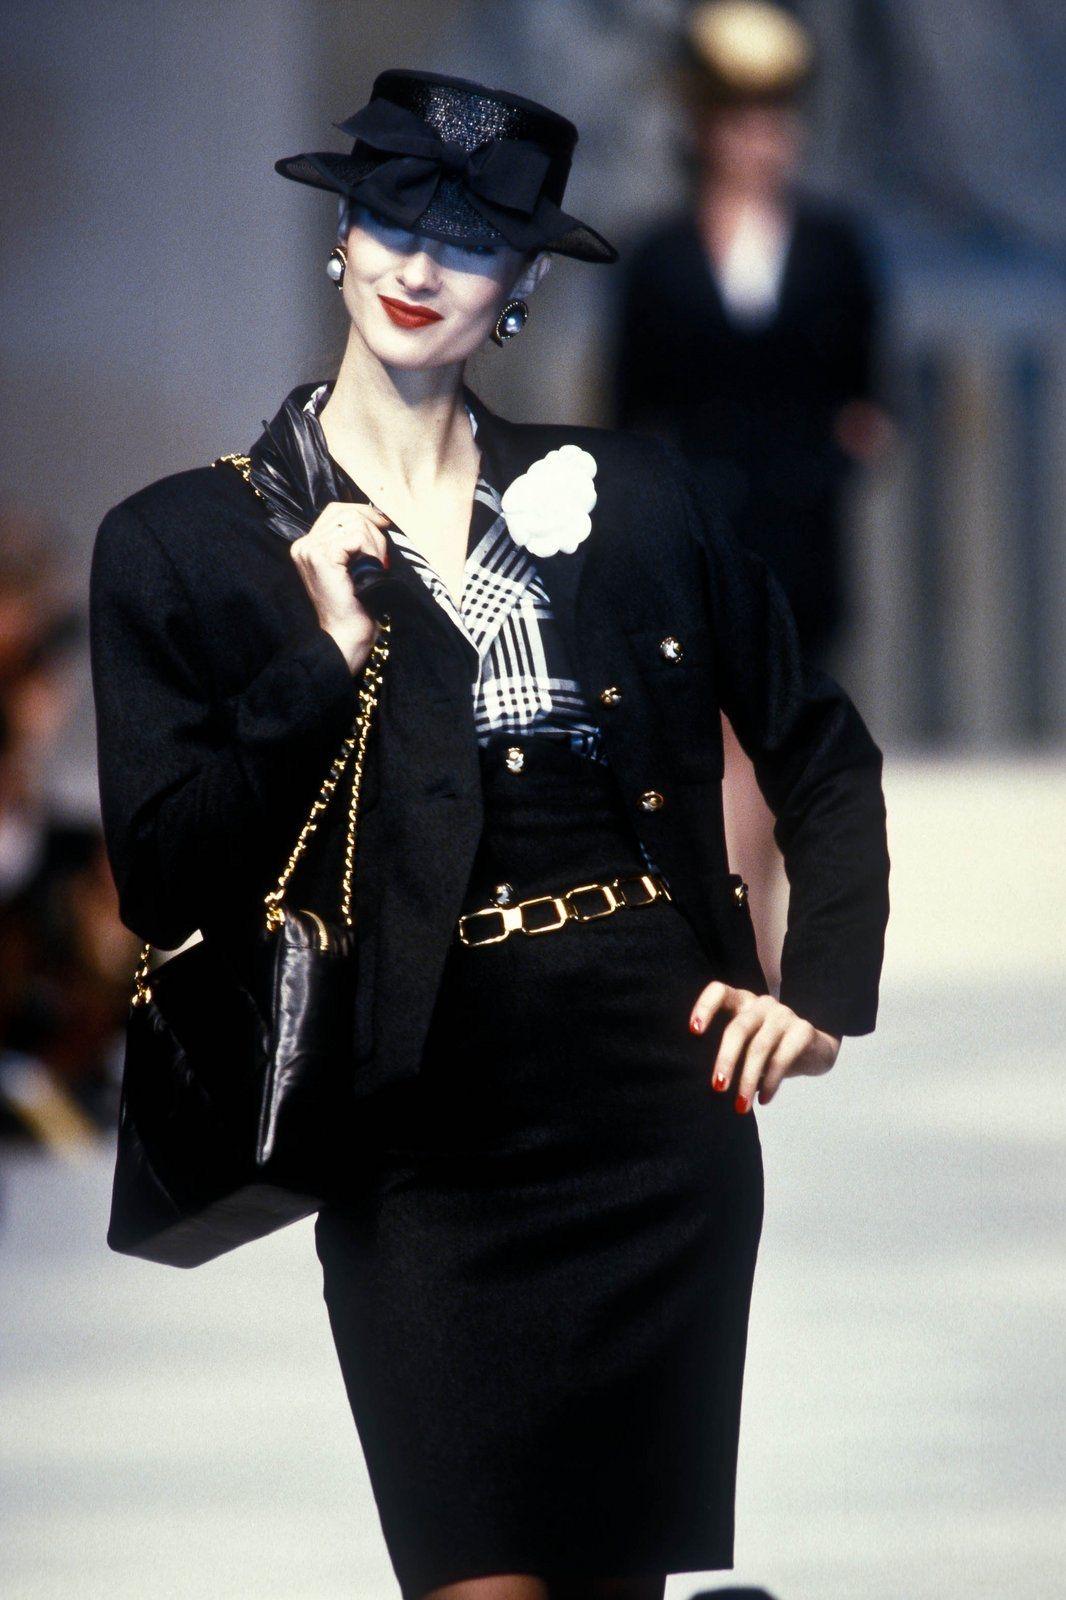 Chanel 1997 Vintage Timeless Lammfell gesteppte Kamera Umhängetasche

1997 {VINTAGE 26 Jahre}

Goldfarbene Hardware
Klassische verflochtene Kettenriemen
Gestepptes weiches Lammfell
Reißverschluss oben
Hauptinnentasche mit Reißverschluss
Seitliche